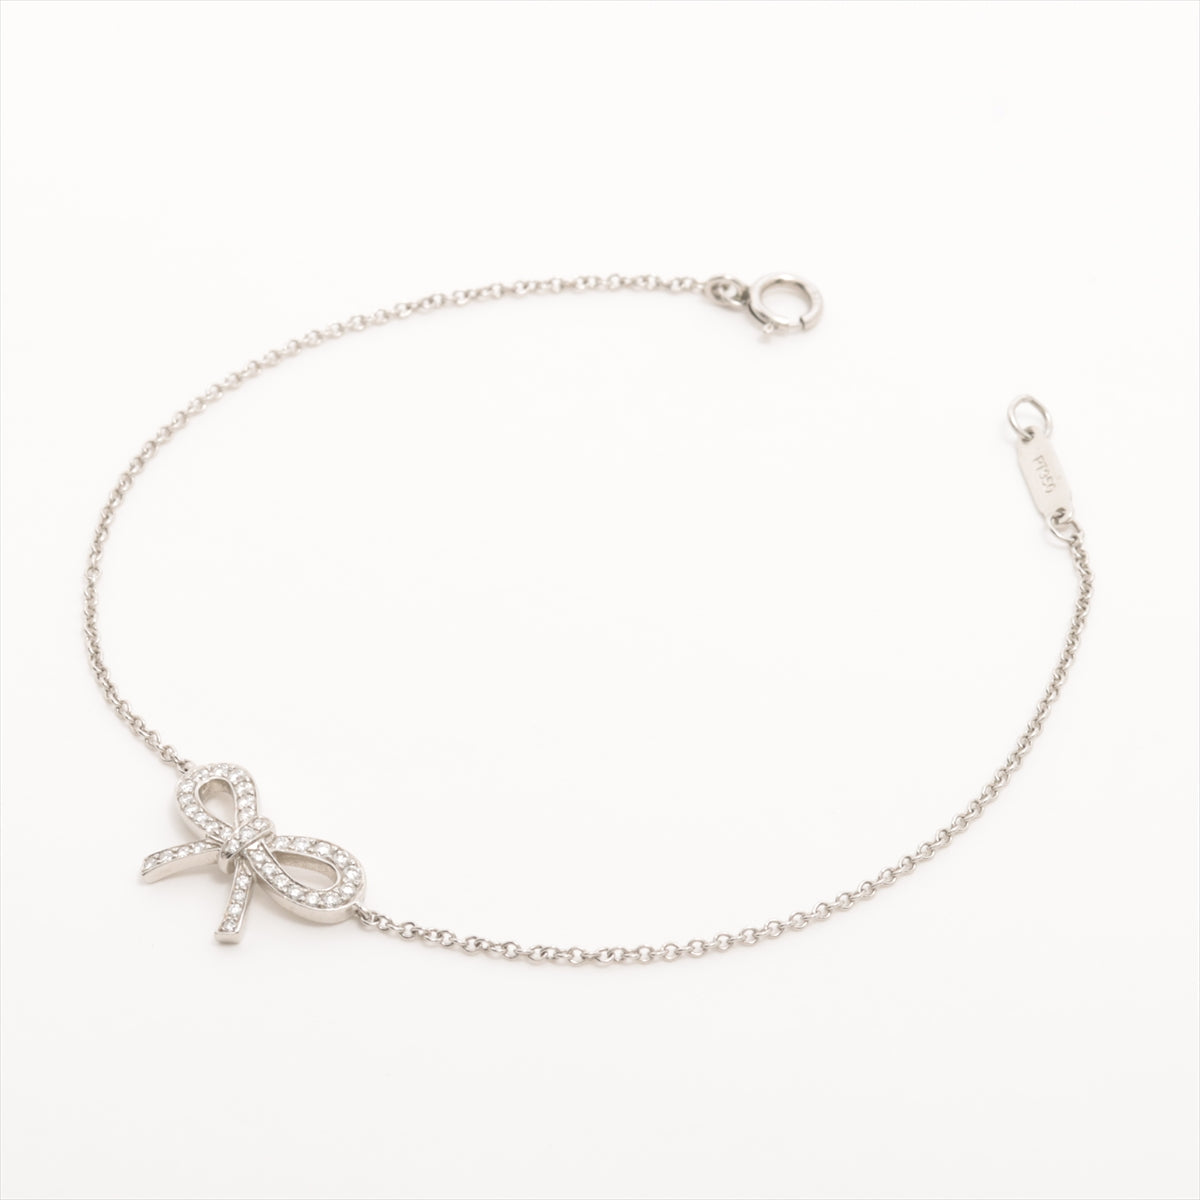 Tiffany Bowie Diamond Bracelet Pt950 2.4g